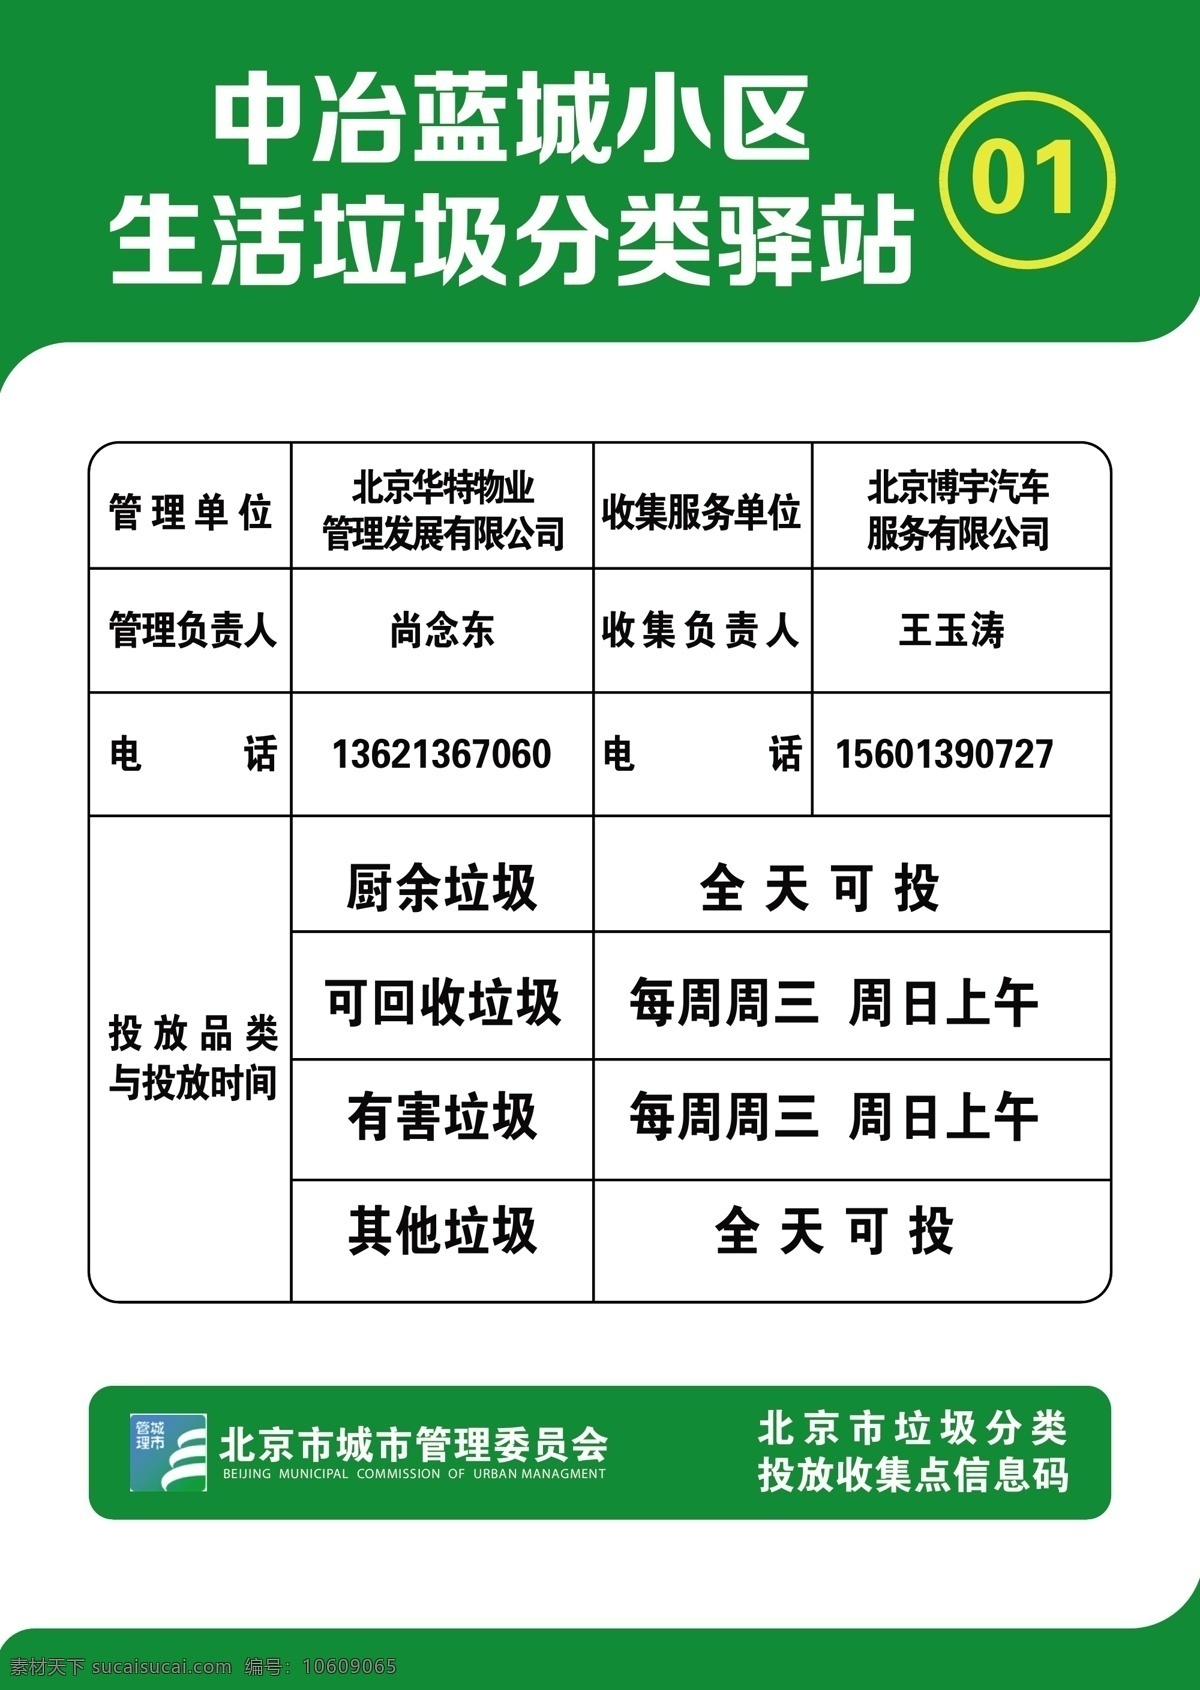 北京市 城市 管理 委员会 垃圾 分类 北京 垃圾分类图片 垃圾分类 北京垃圾分类 城市委员会